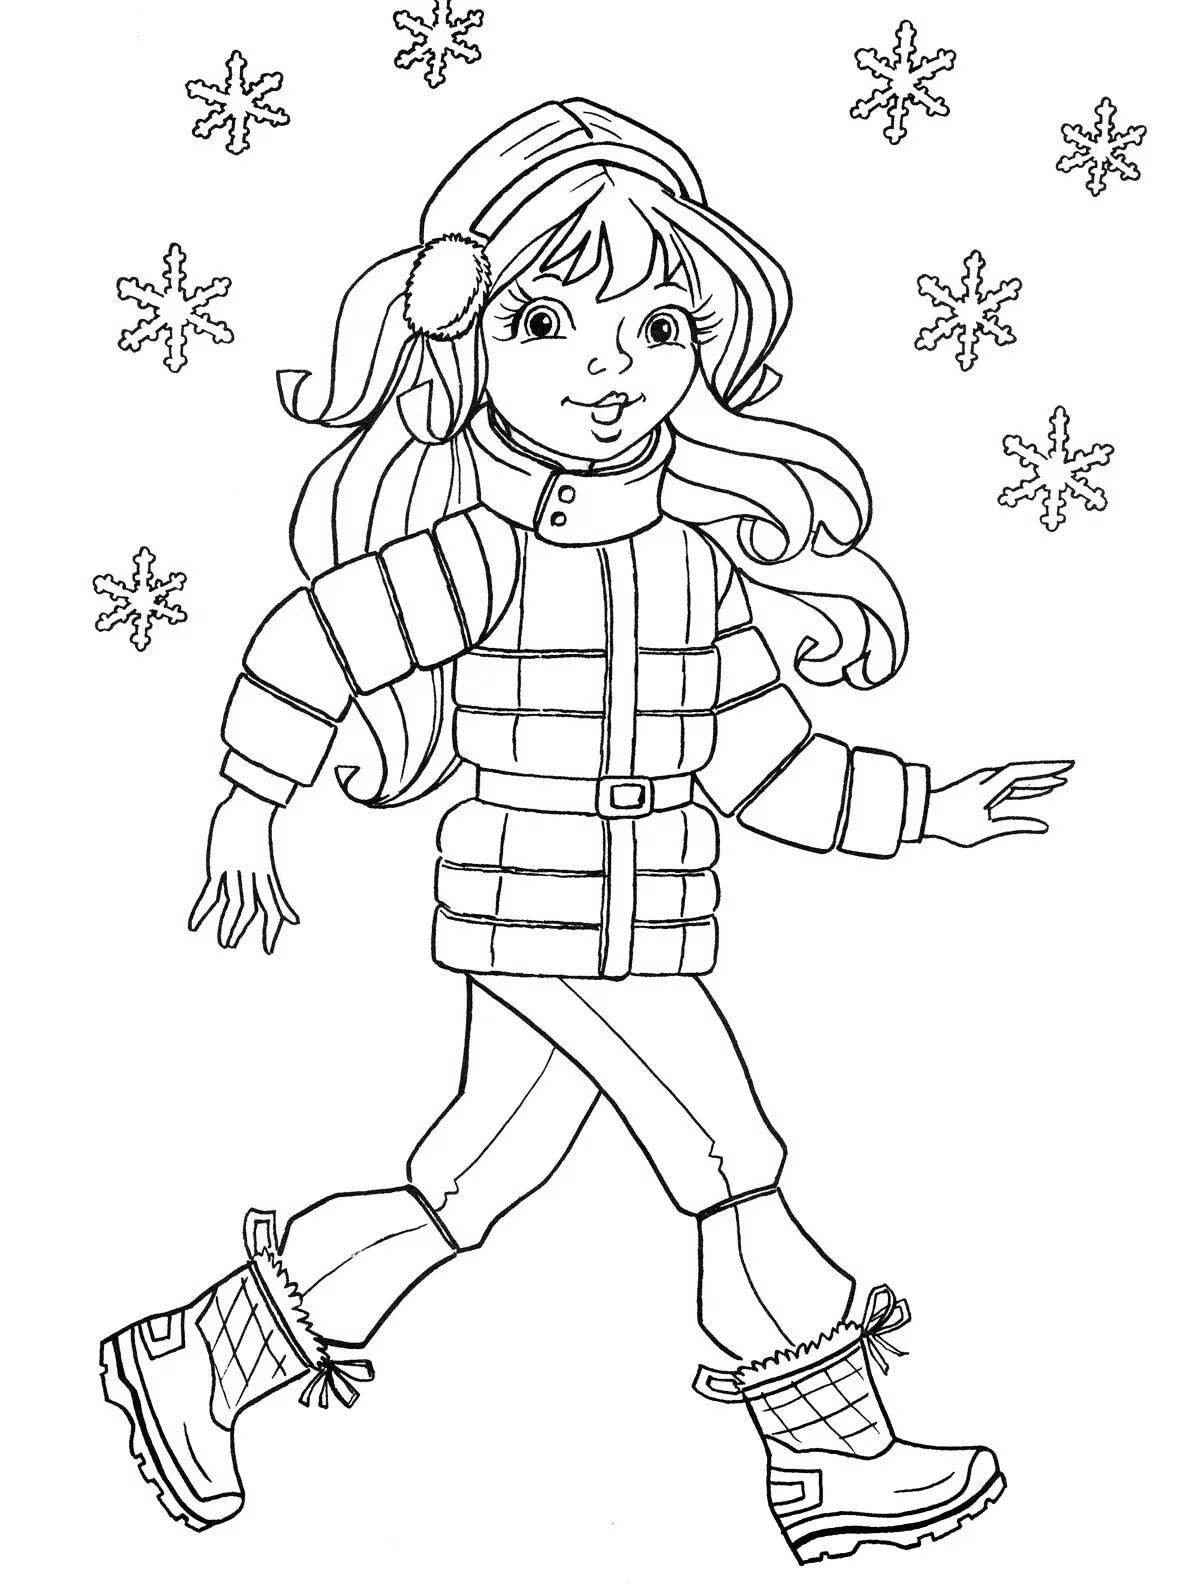 Симпатичная девочка-раскраска в зимней одежде